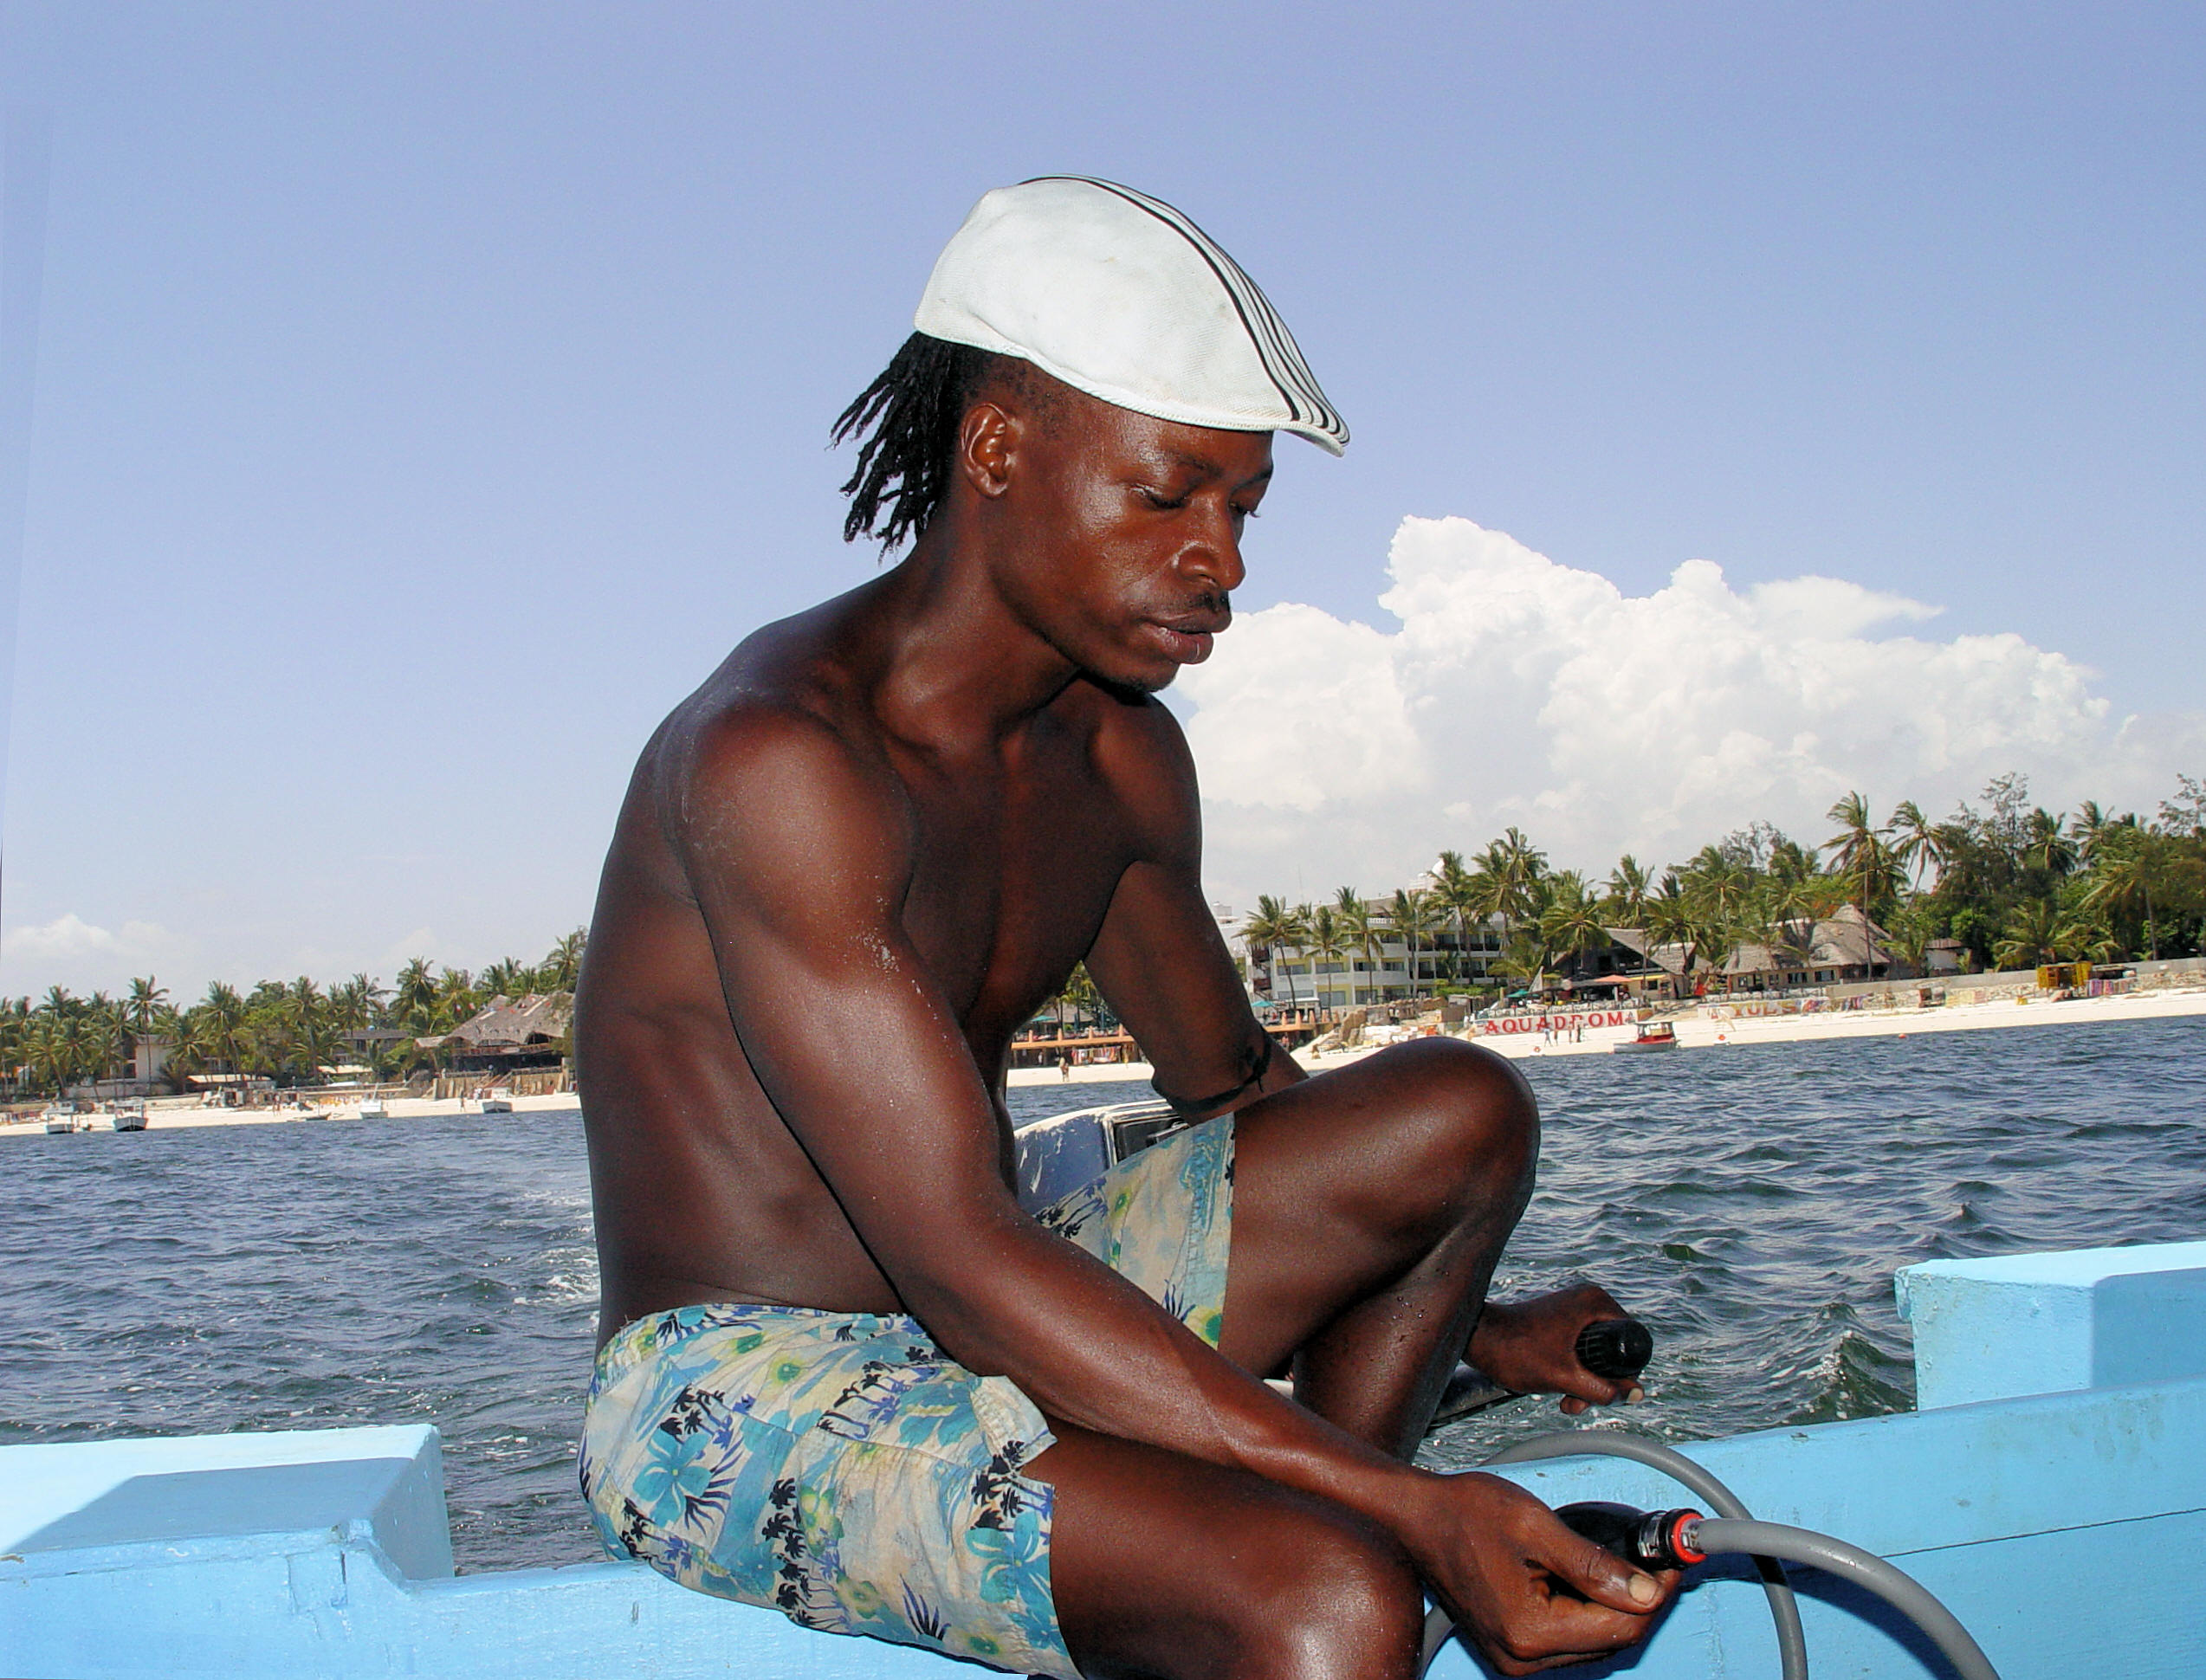 Snorkeling Boat Operator on Kenya's Indian Ocean Coast